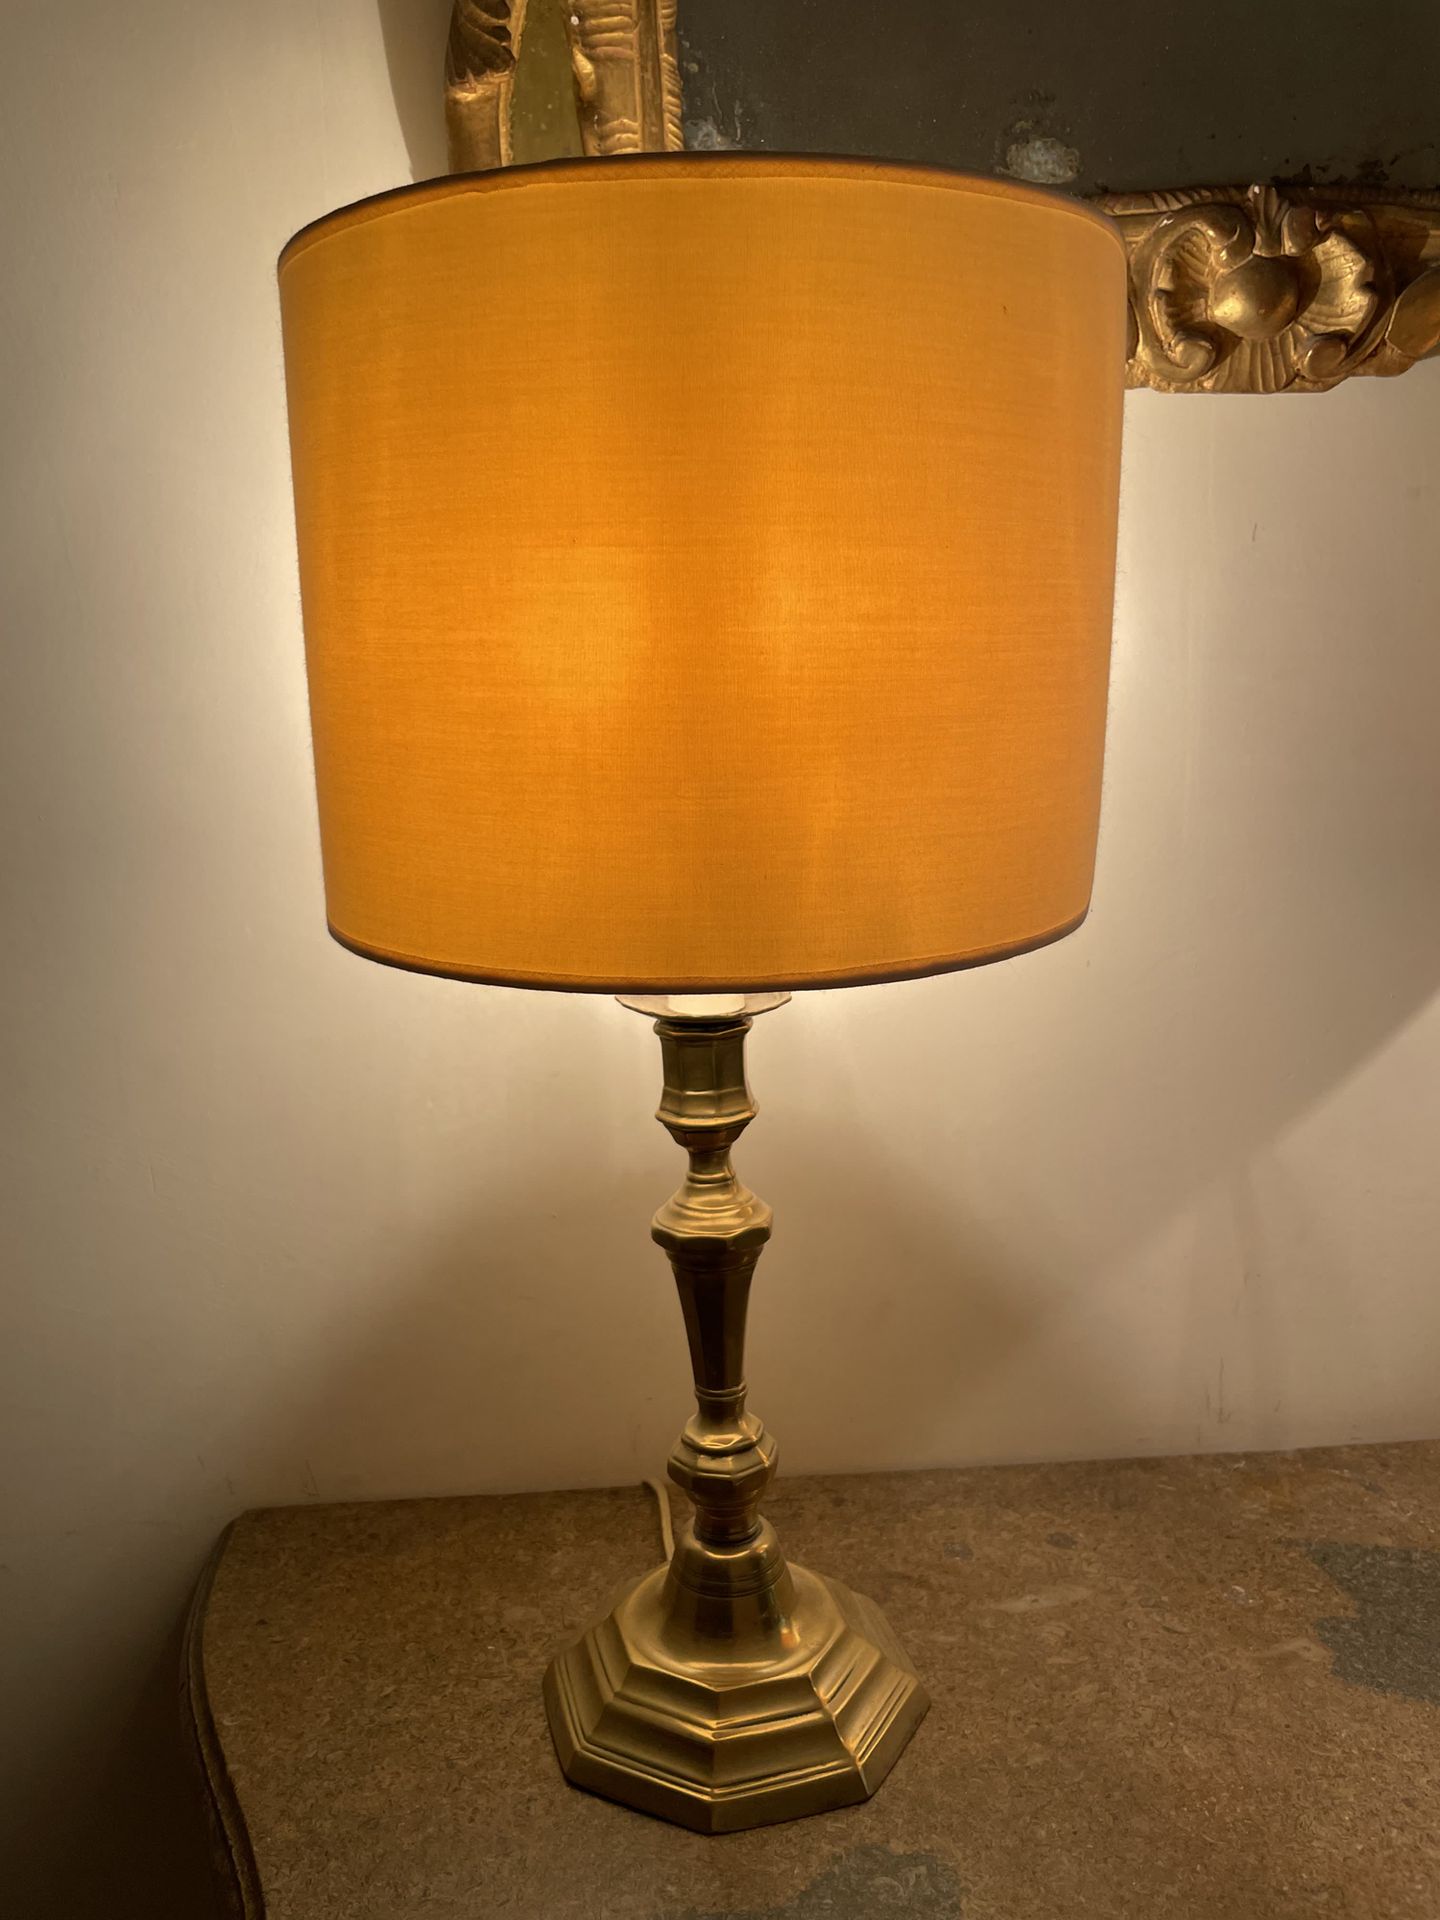 Null Cinco antorchas, un par de ellas montadas como lámparas
En latón
H. 25,5 cm